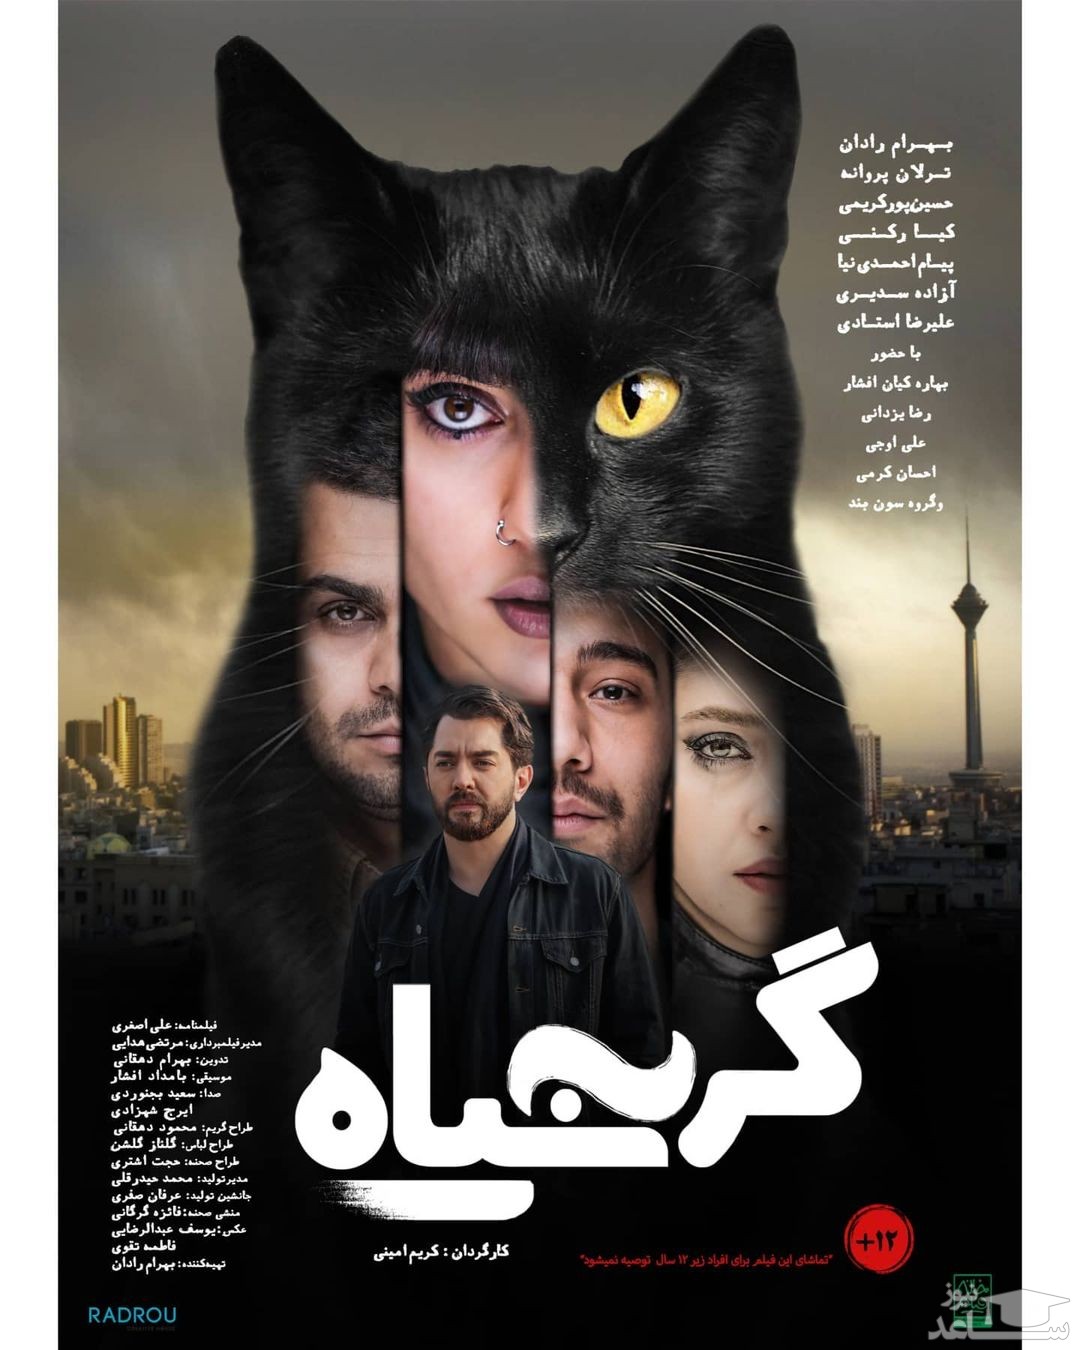  فیلم سینمایی گربه سیاه به کارگردانی کریم امینی